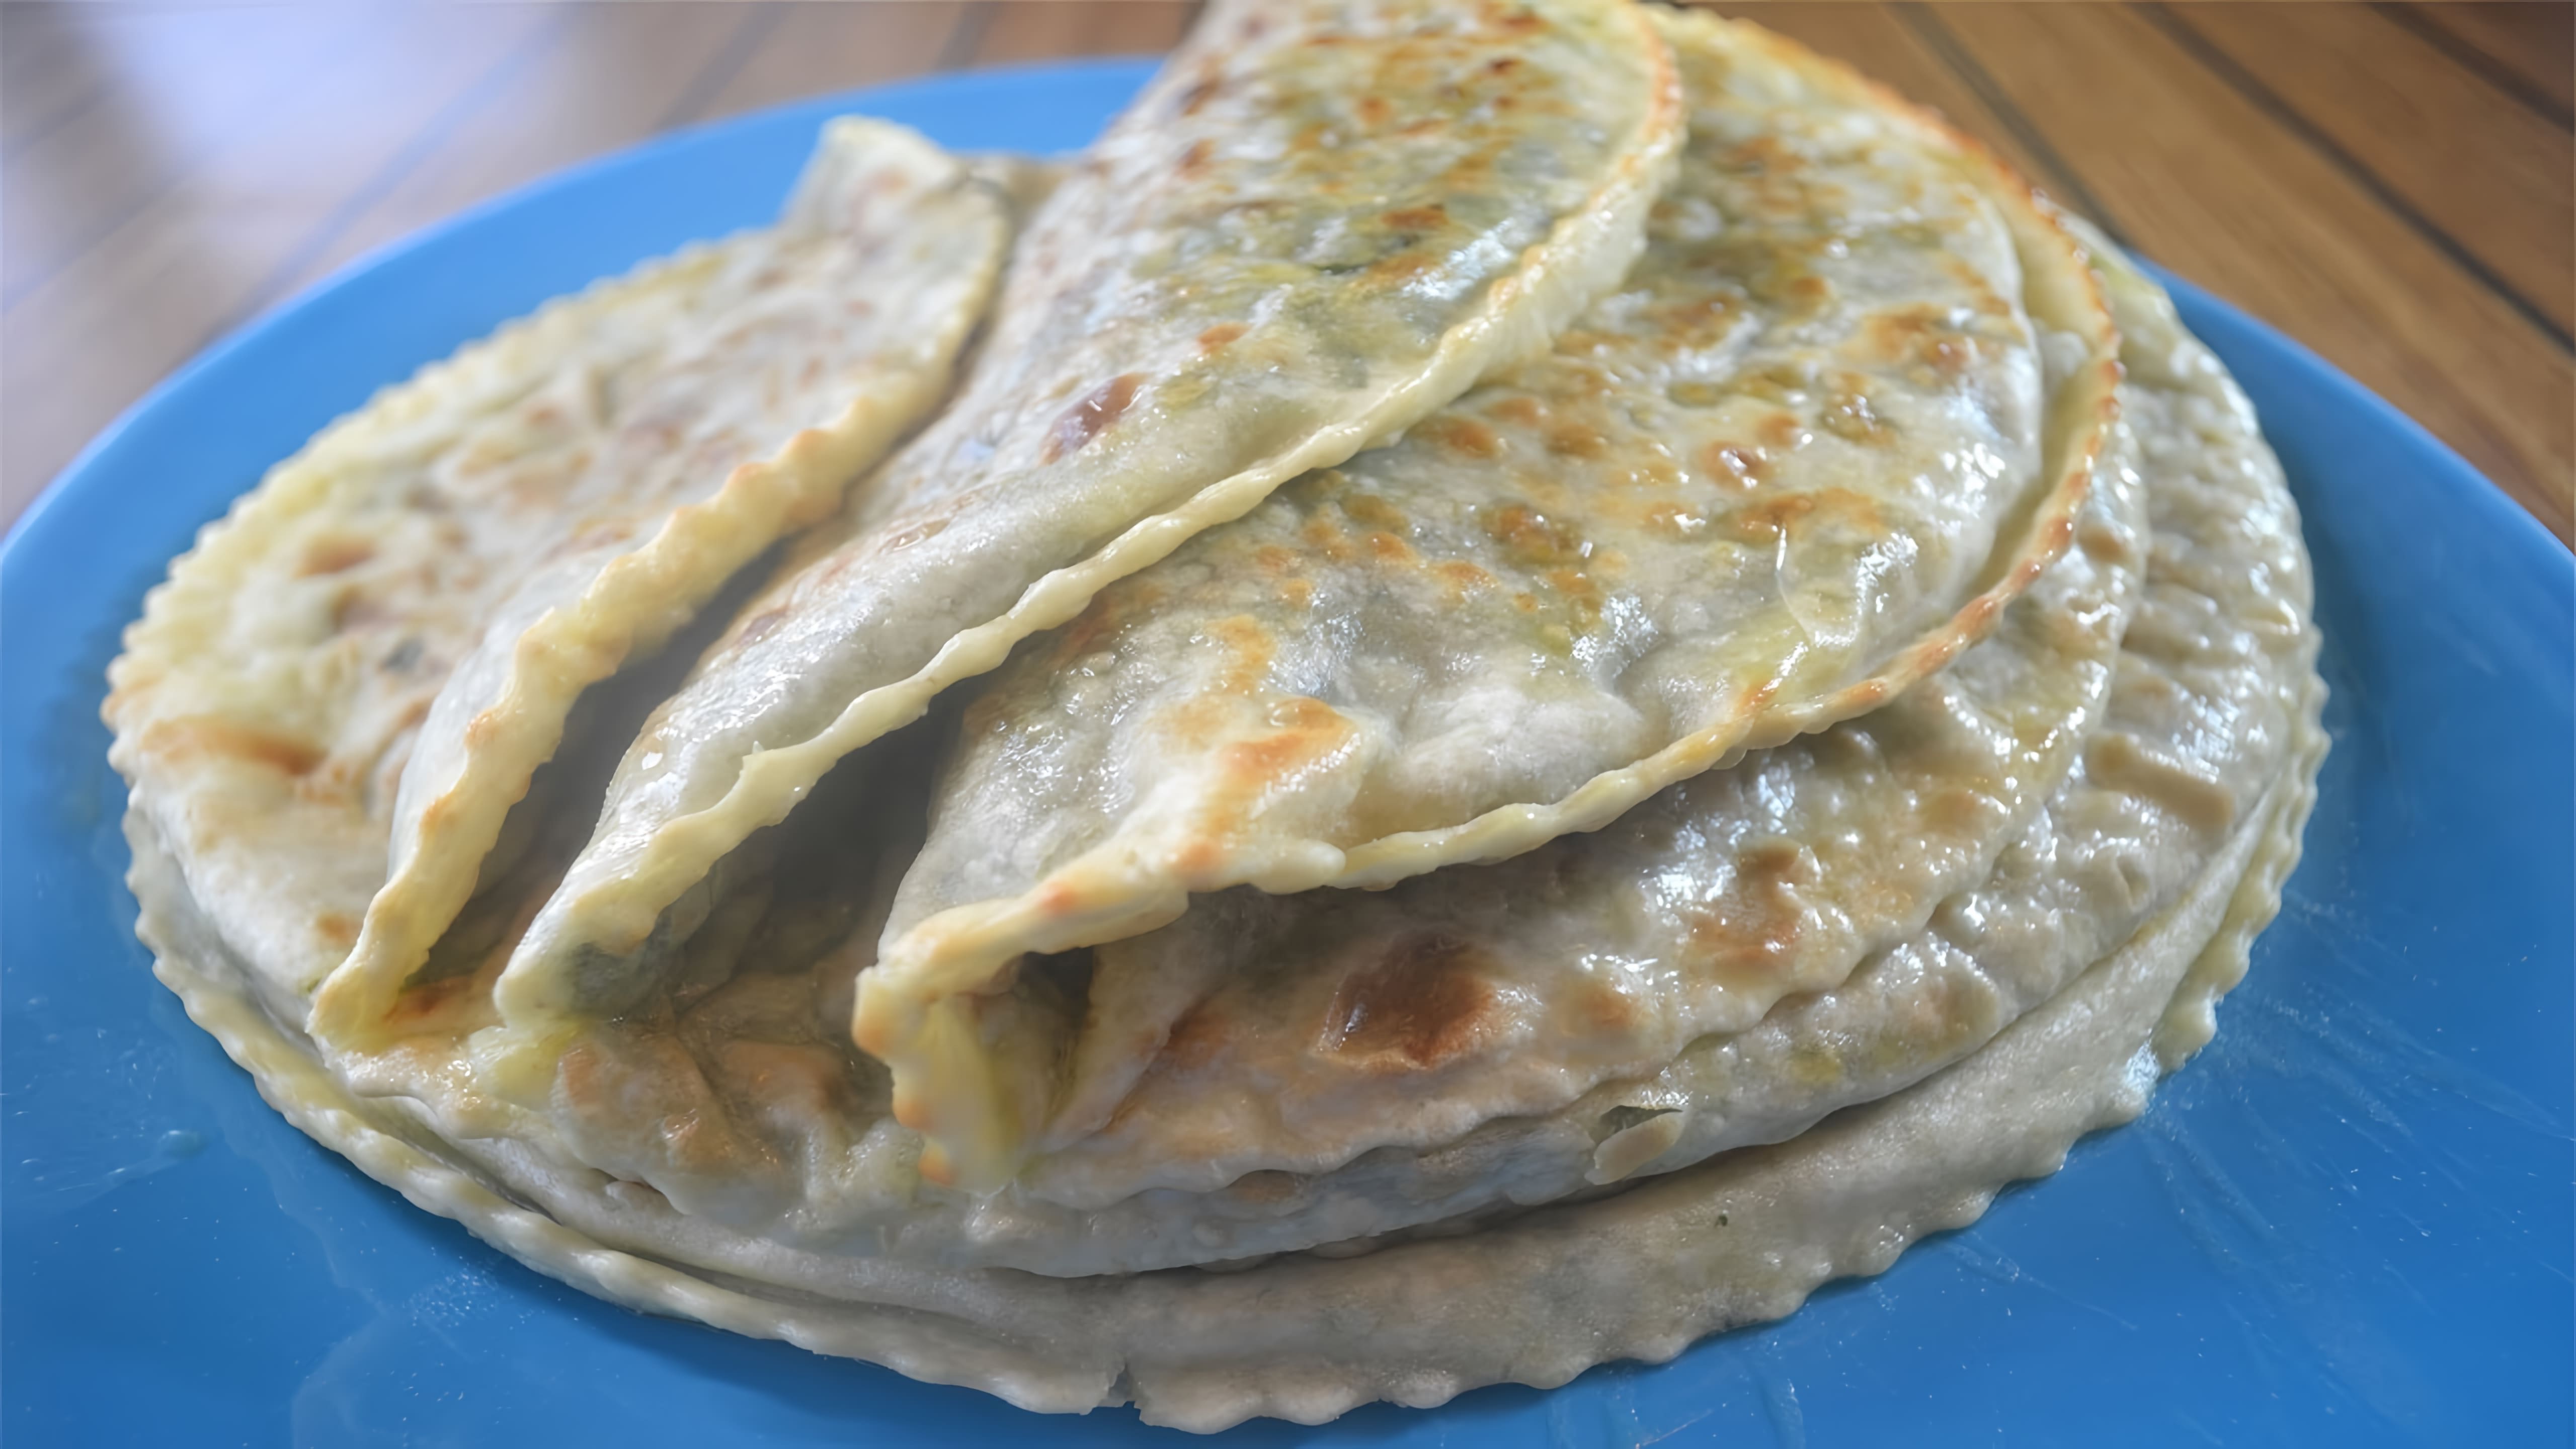 В этом видео демонстрируется процесс приготовления тонкого чуду с зеленью, традиционного блюда дагестанской кухни